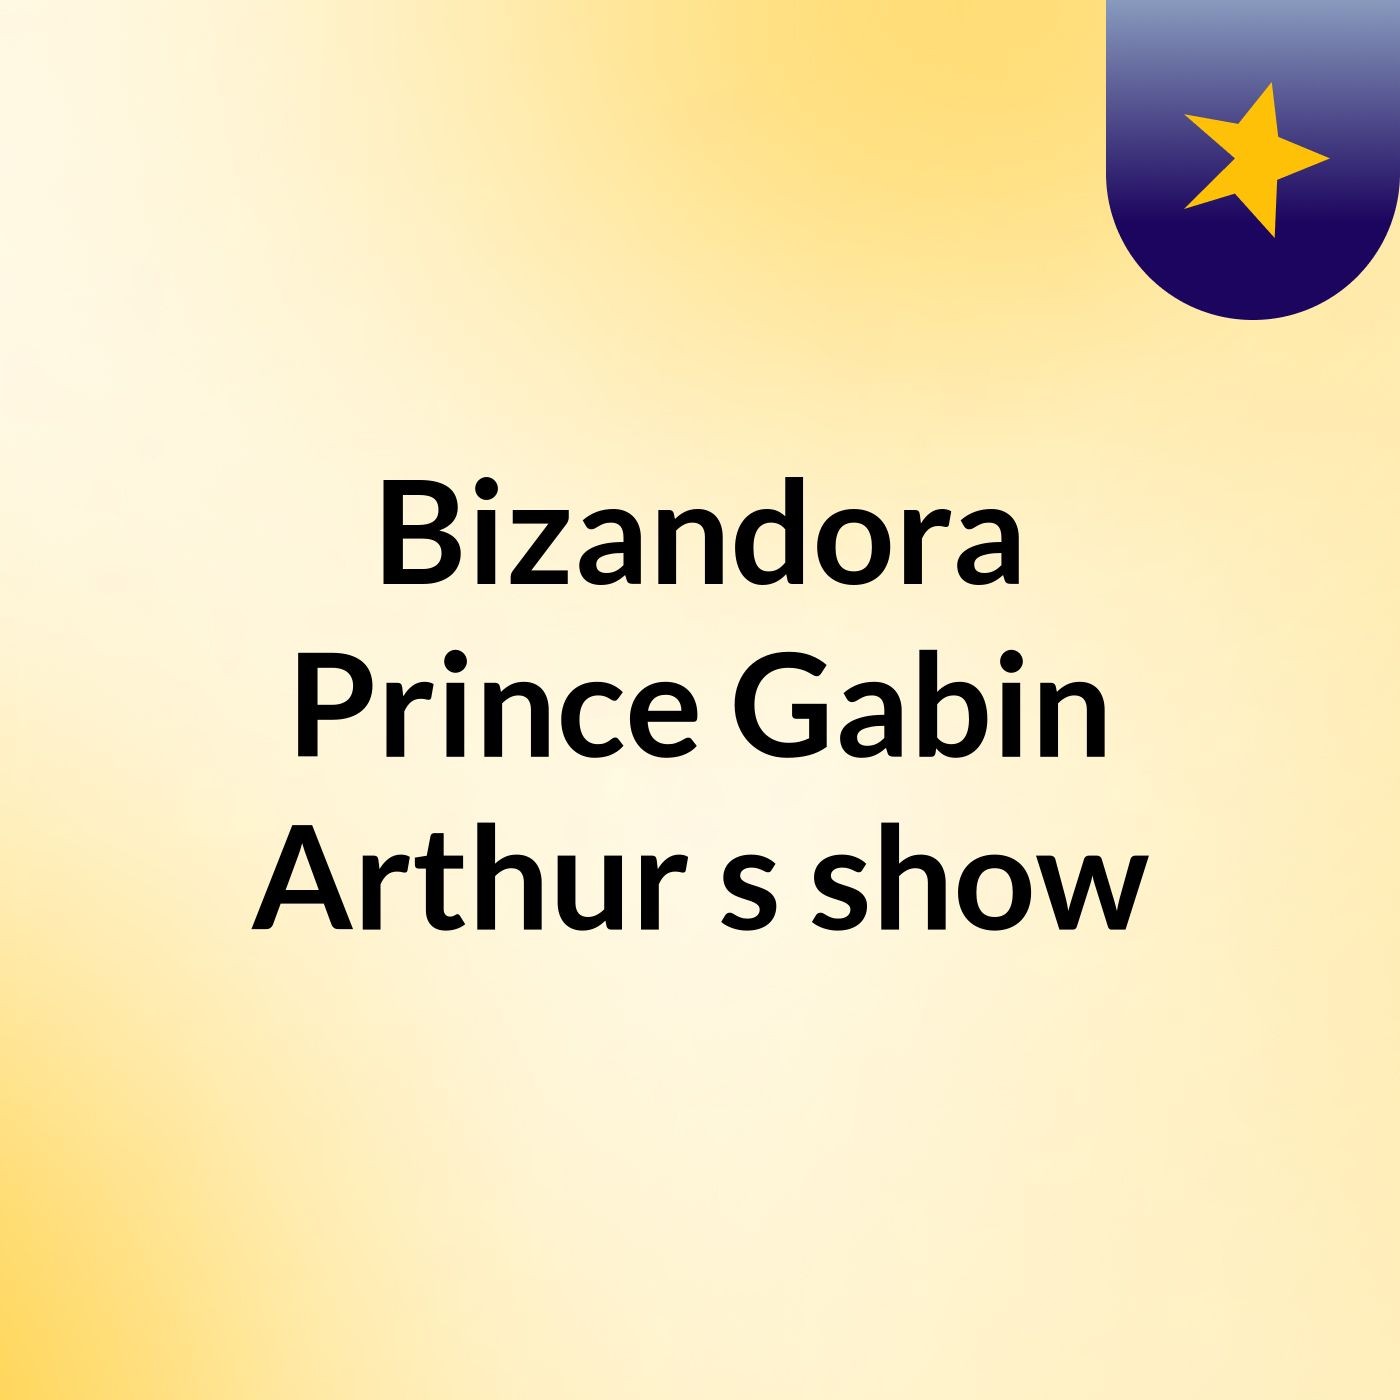 Episode 6 - Bizandora Prince Gabin Arthur's show